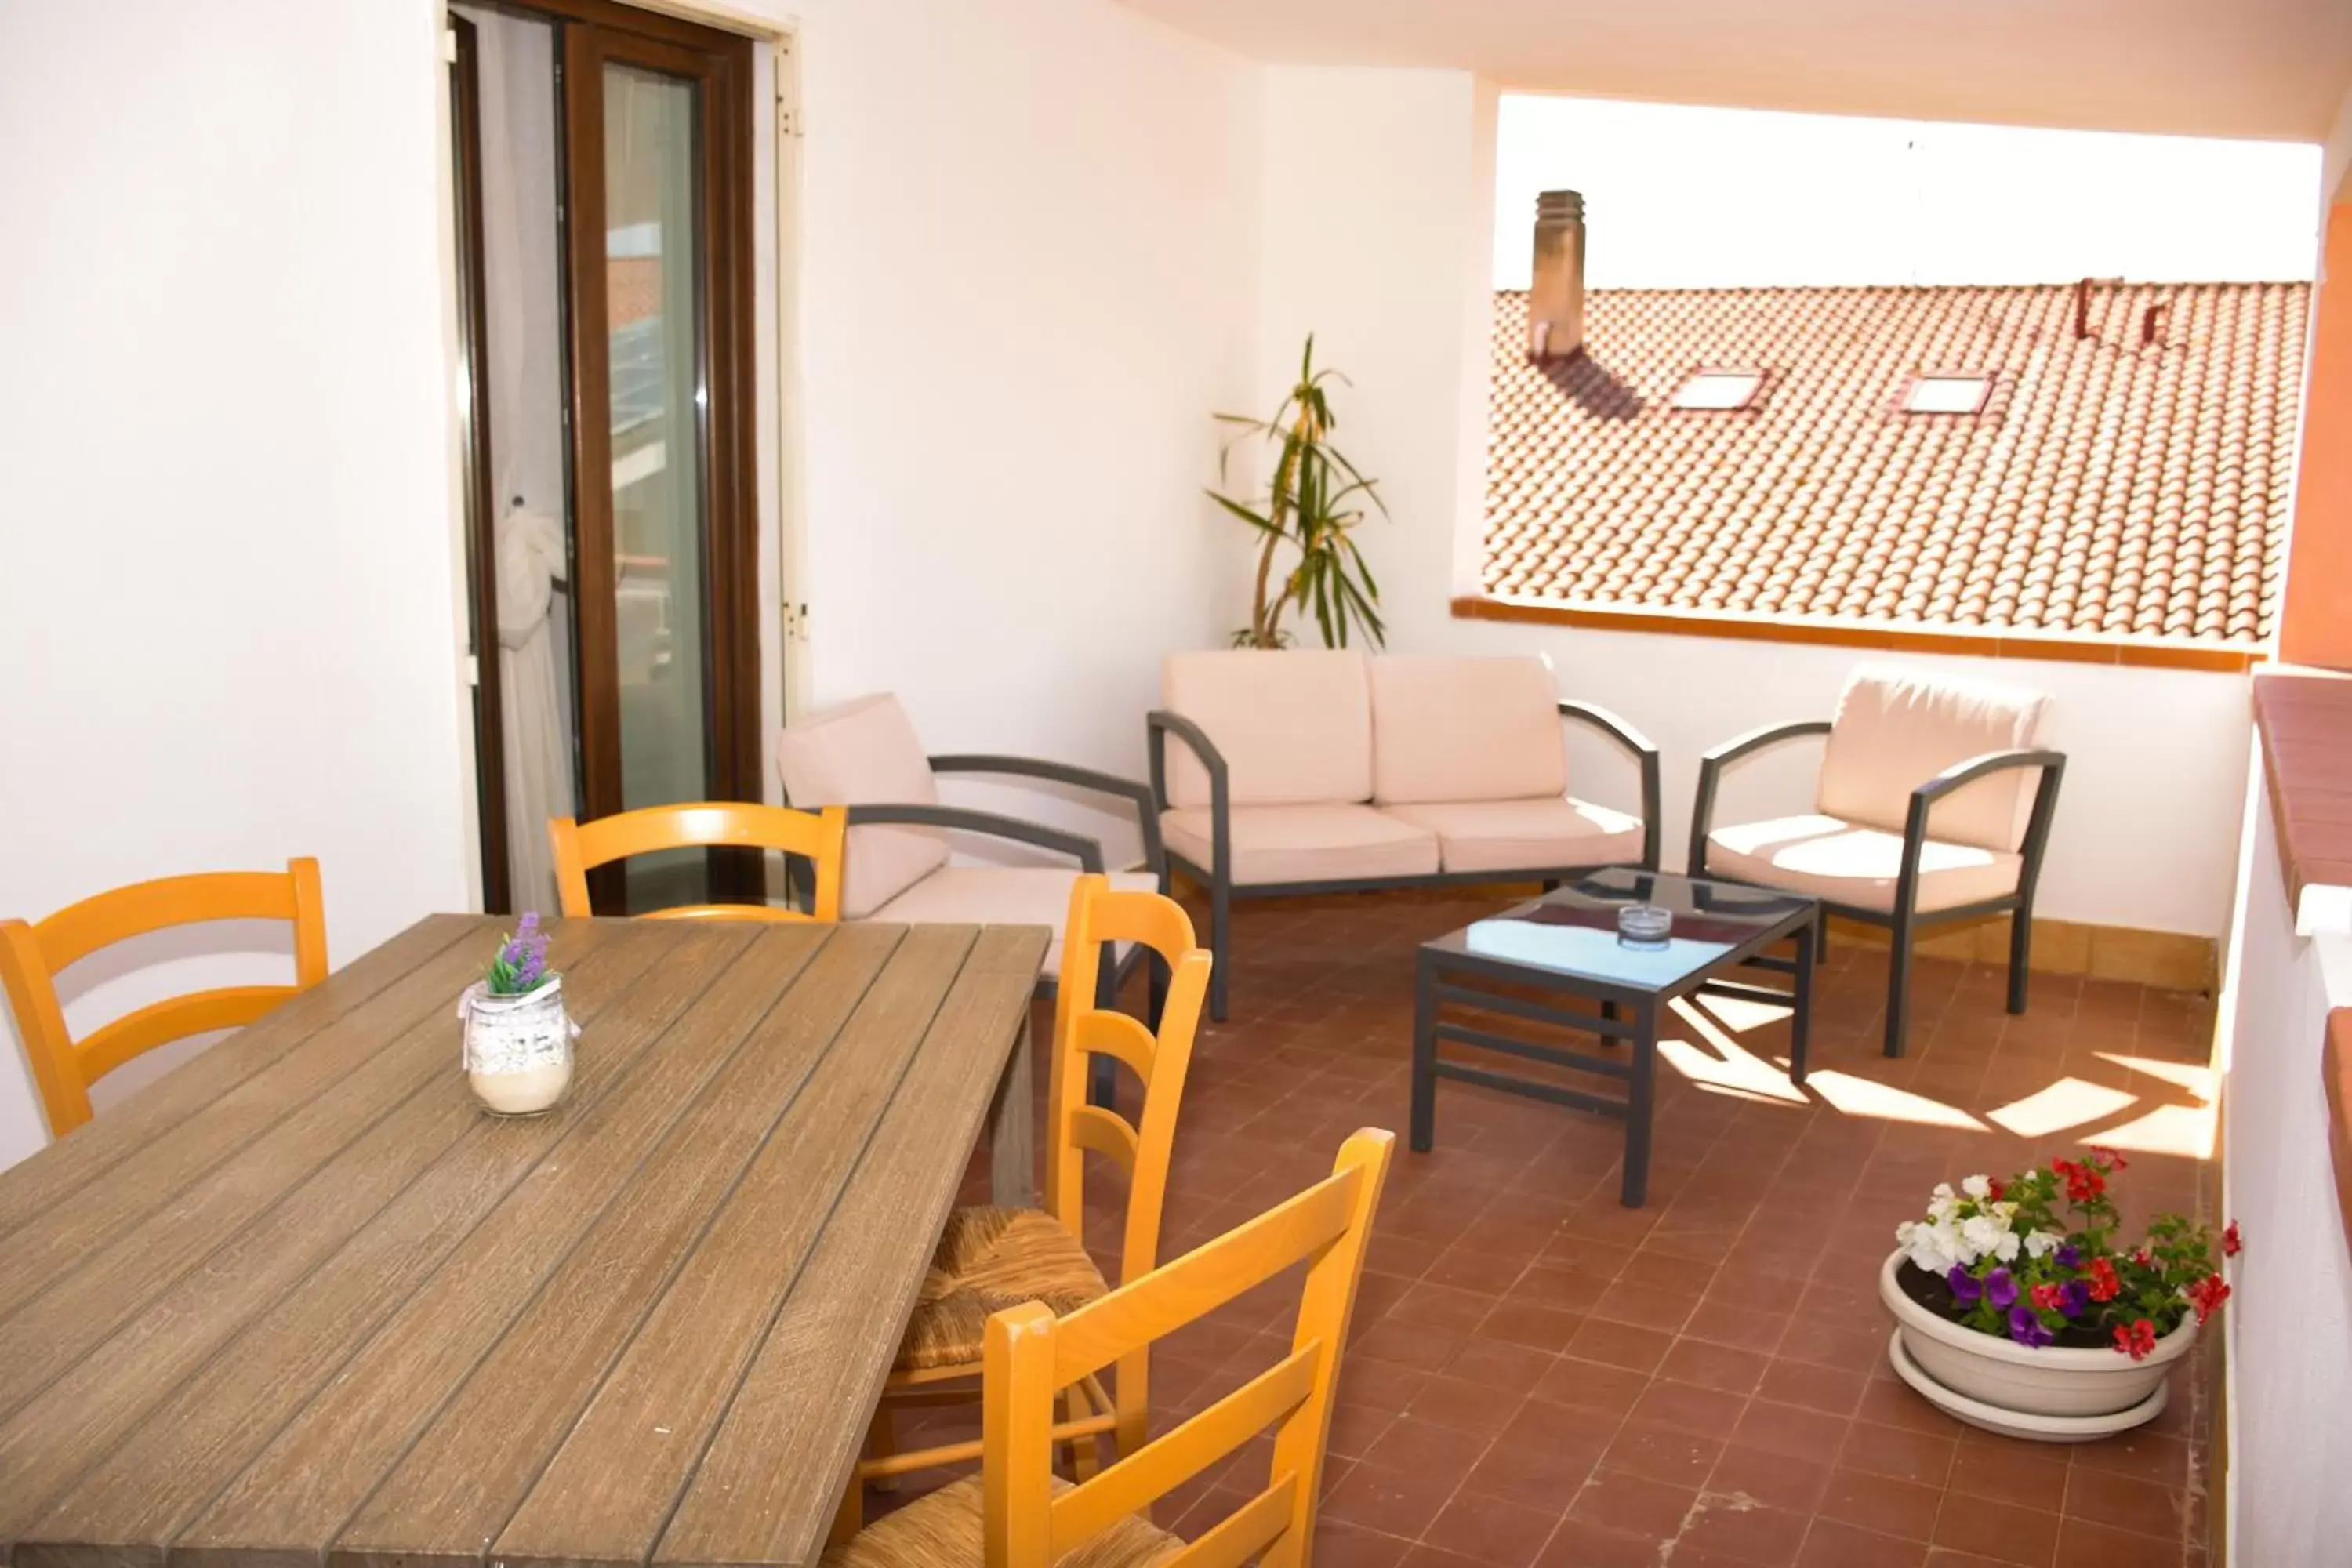 Balcony/Terrace, Dining Area in Flowery Inn Villa